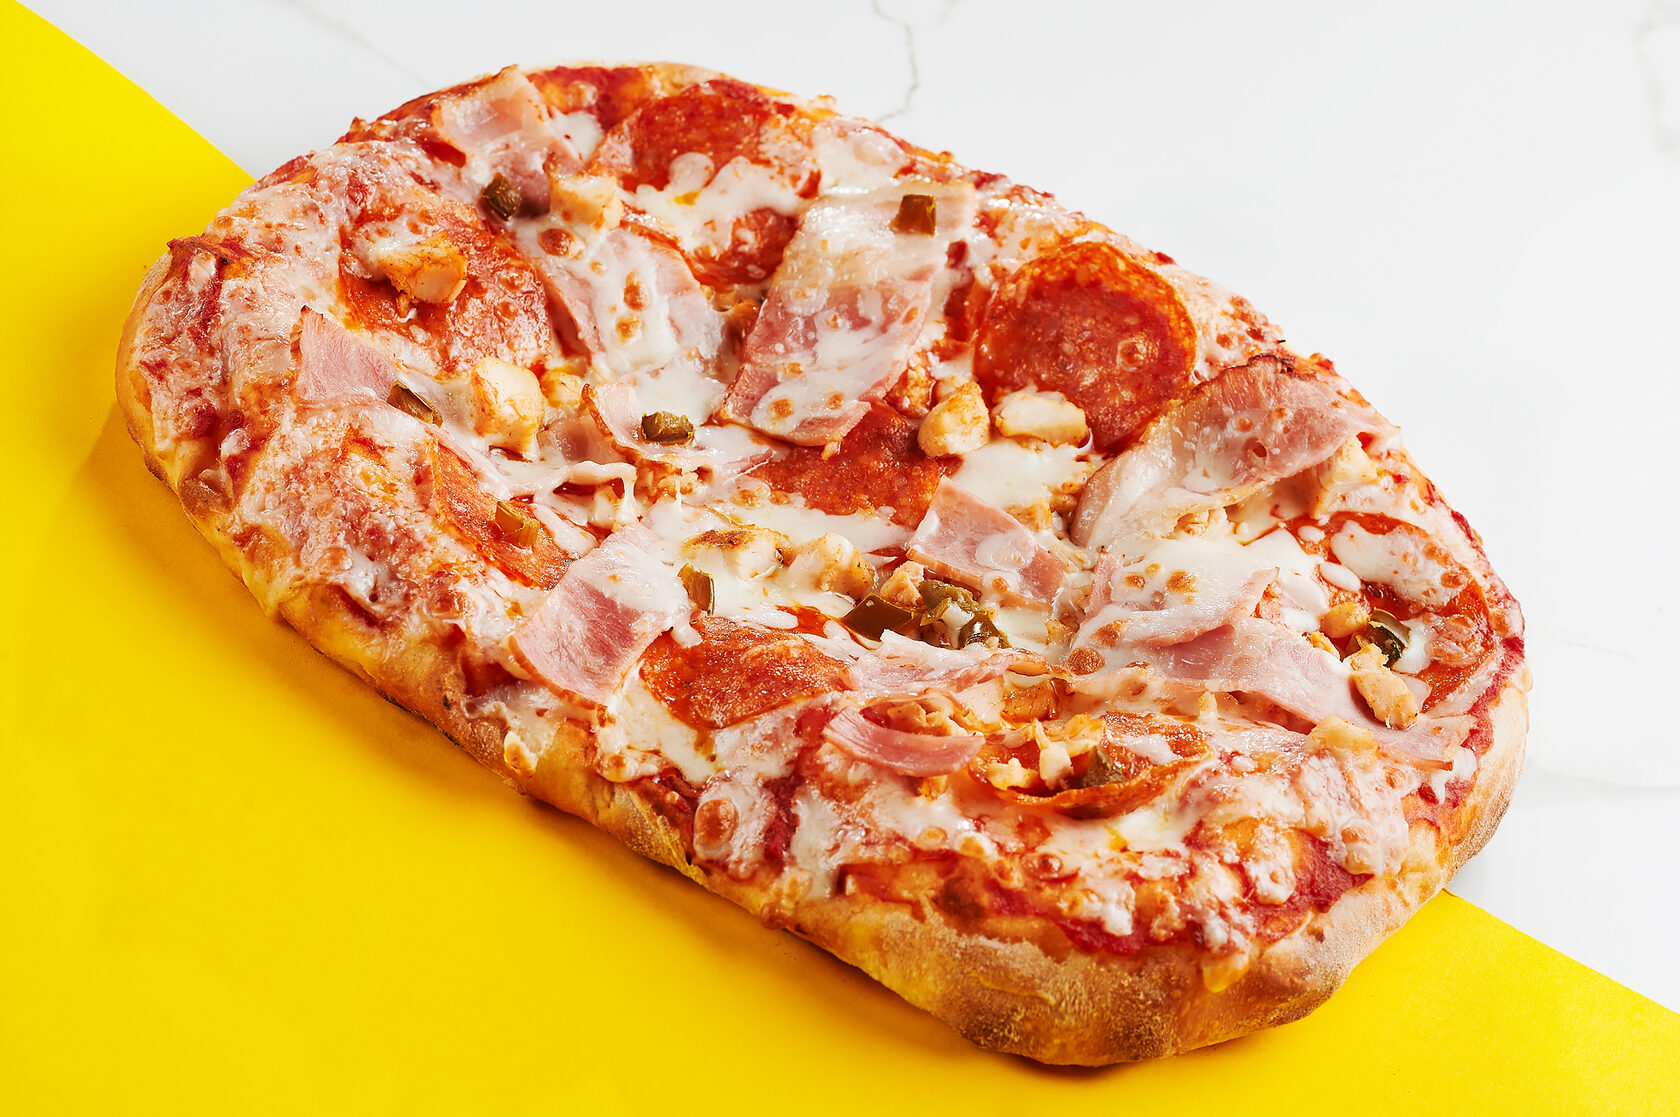 сколько калорий в куске пиццы пепперони додо фото 112